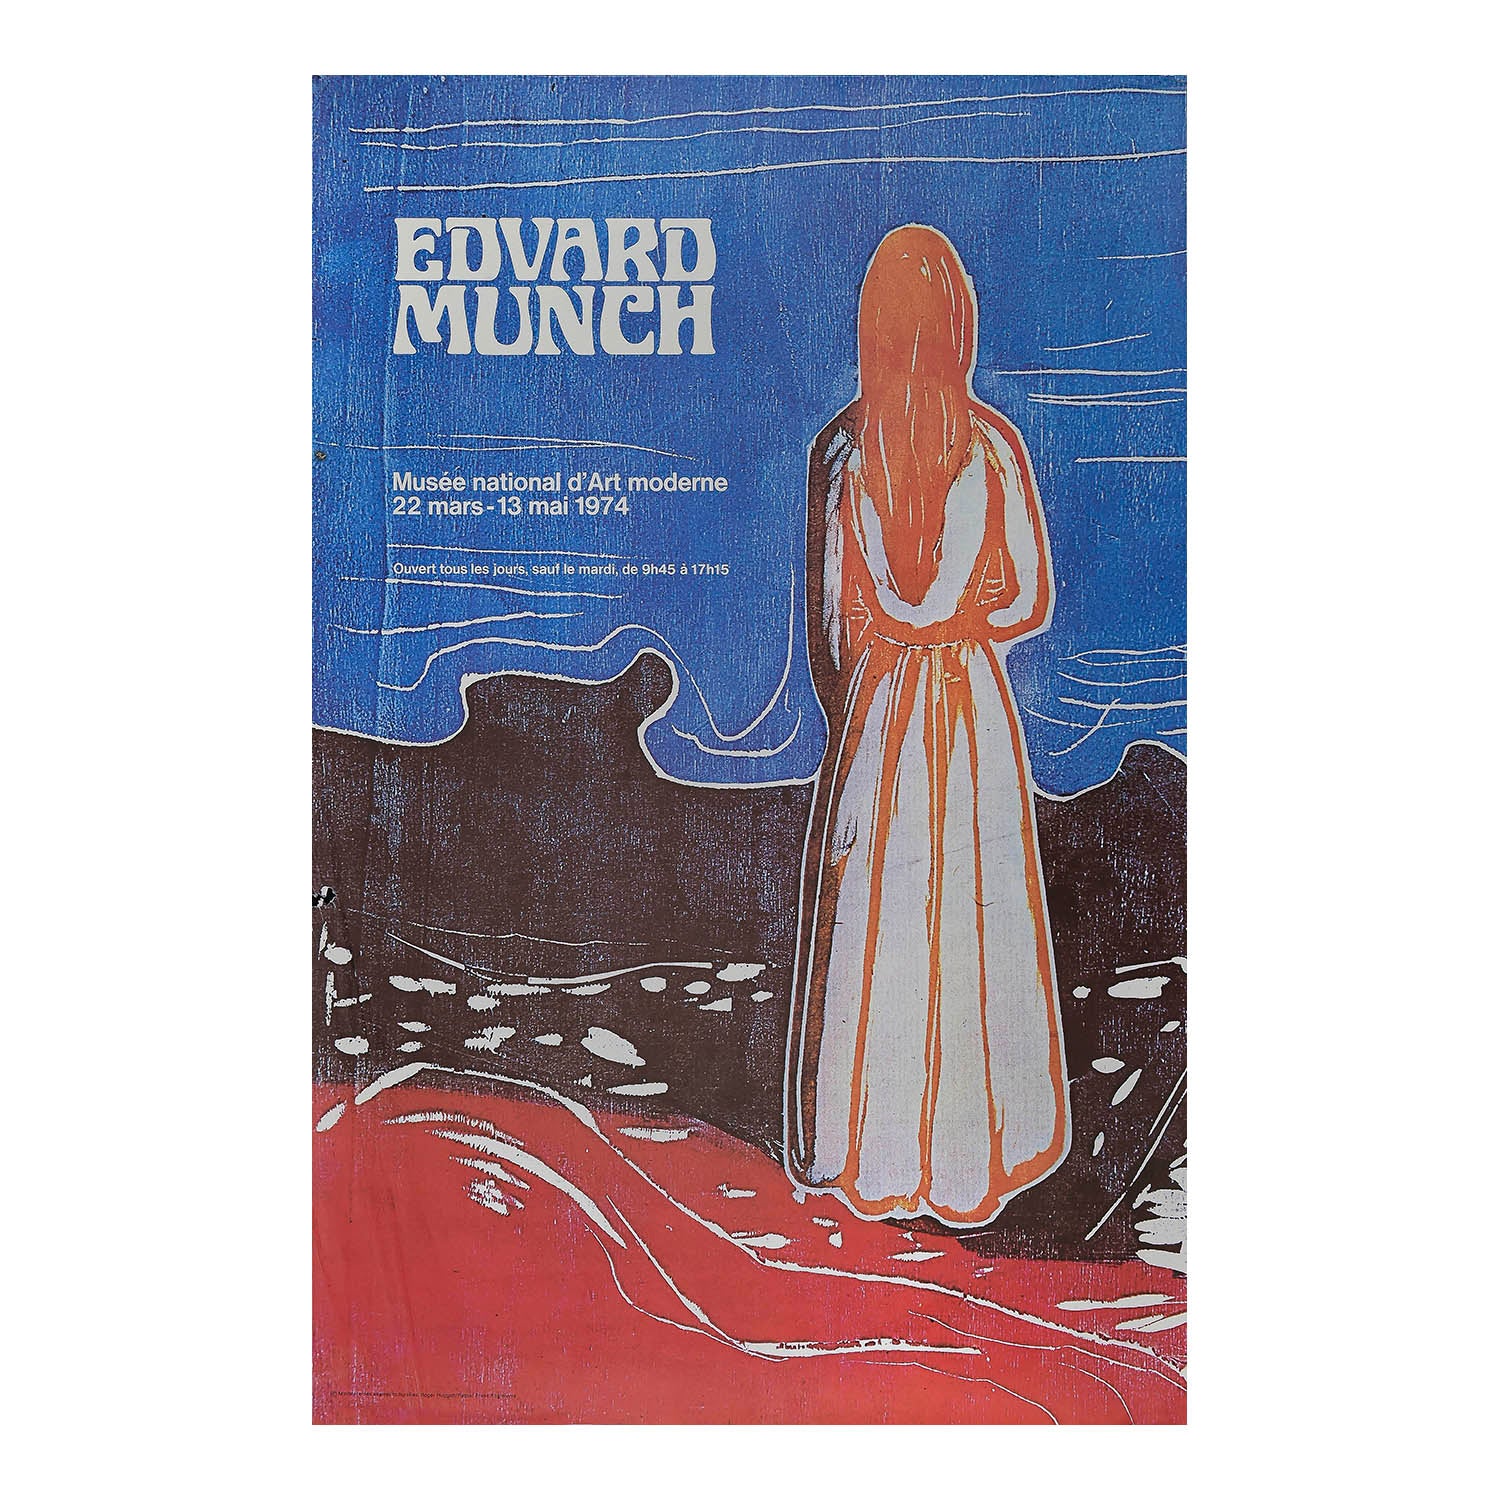 Original exhibition poster, Edvard Munch, Musée National d'Art Moderne, 1974